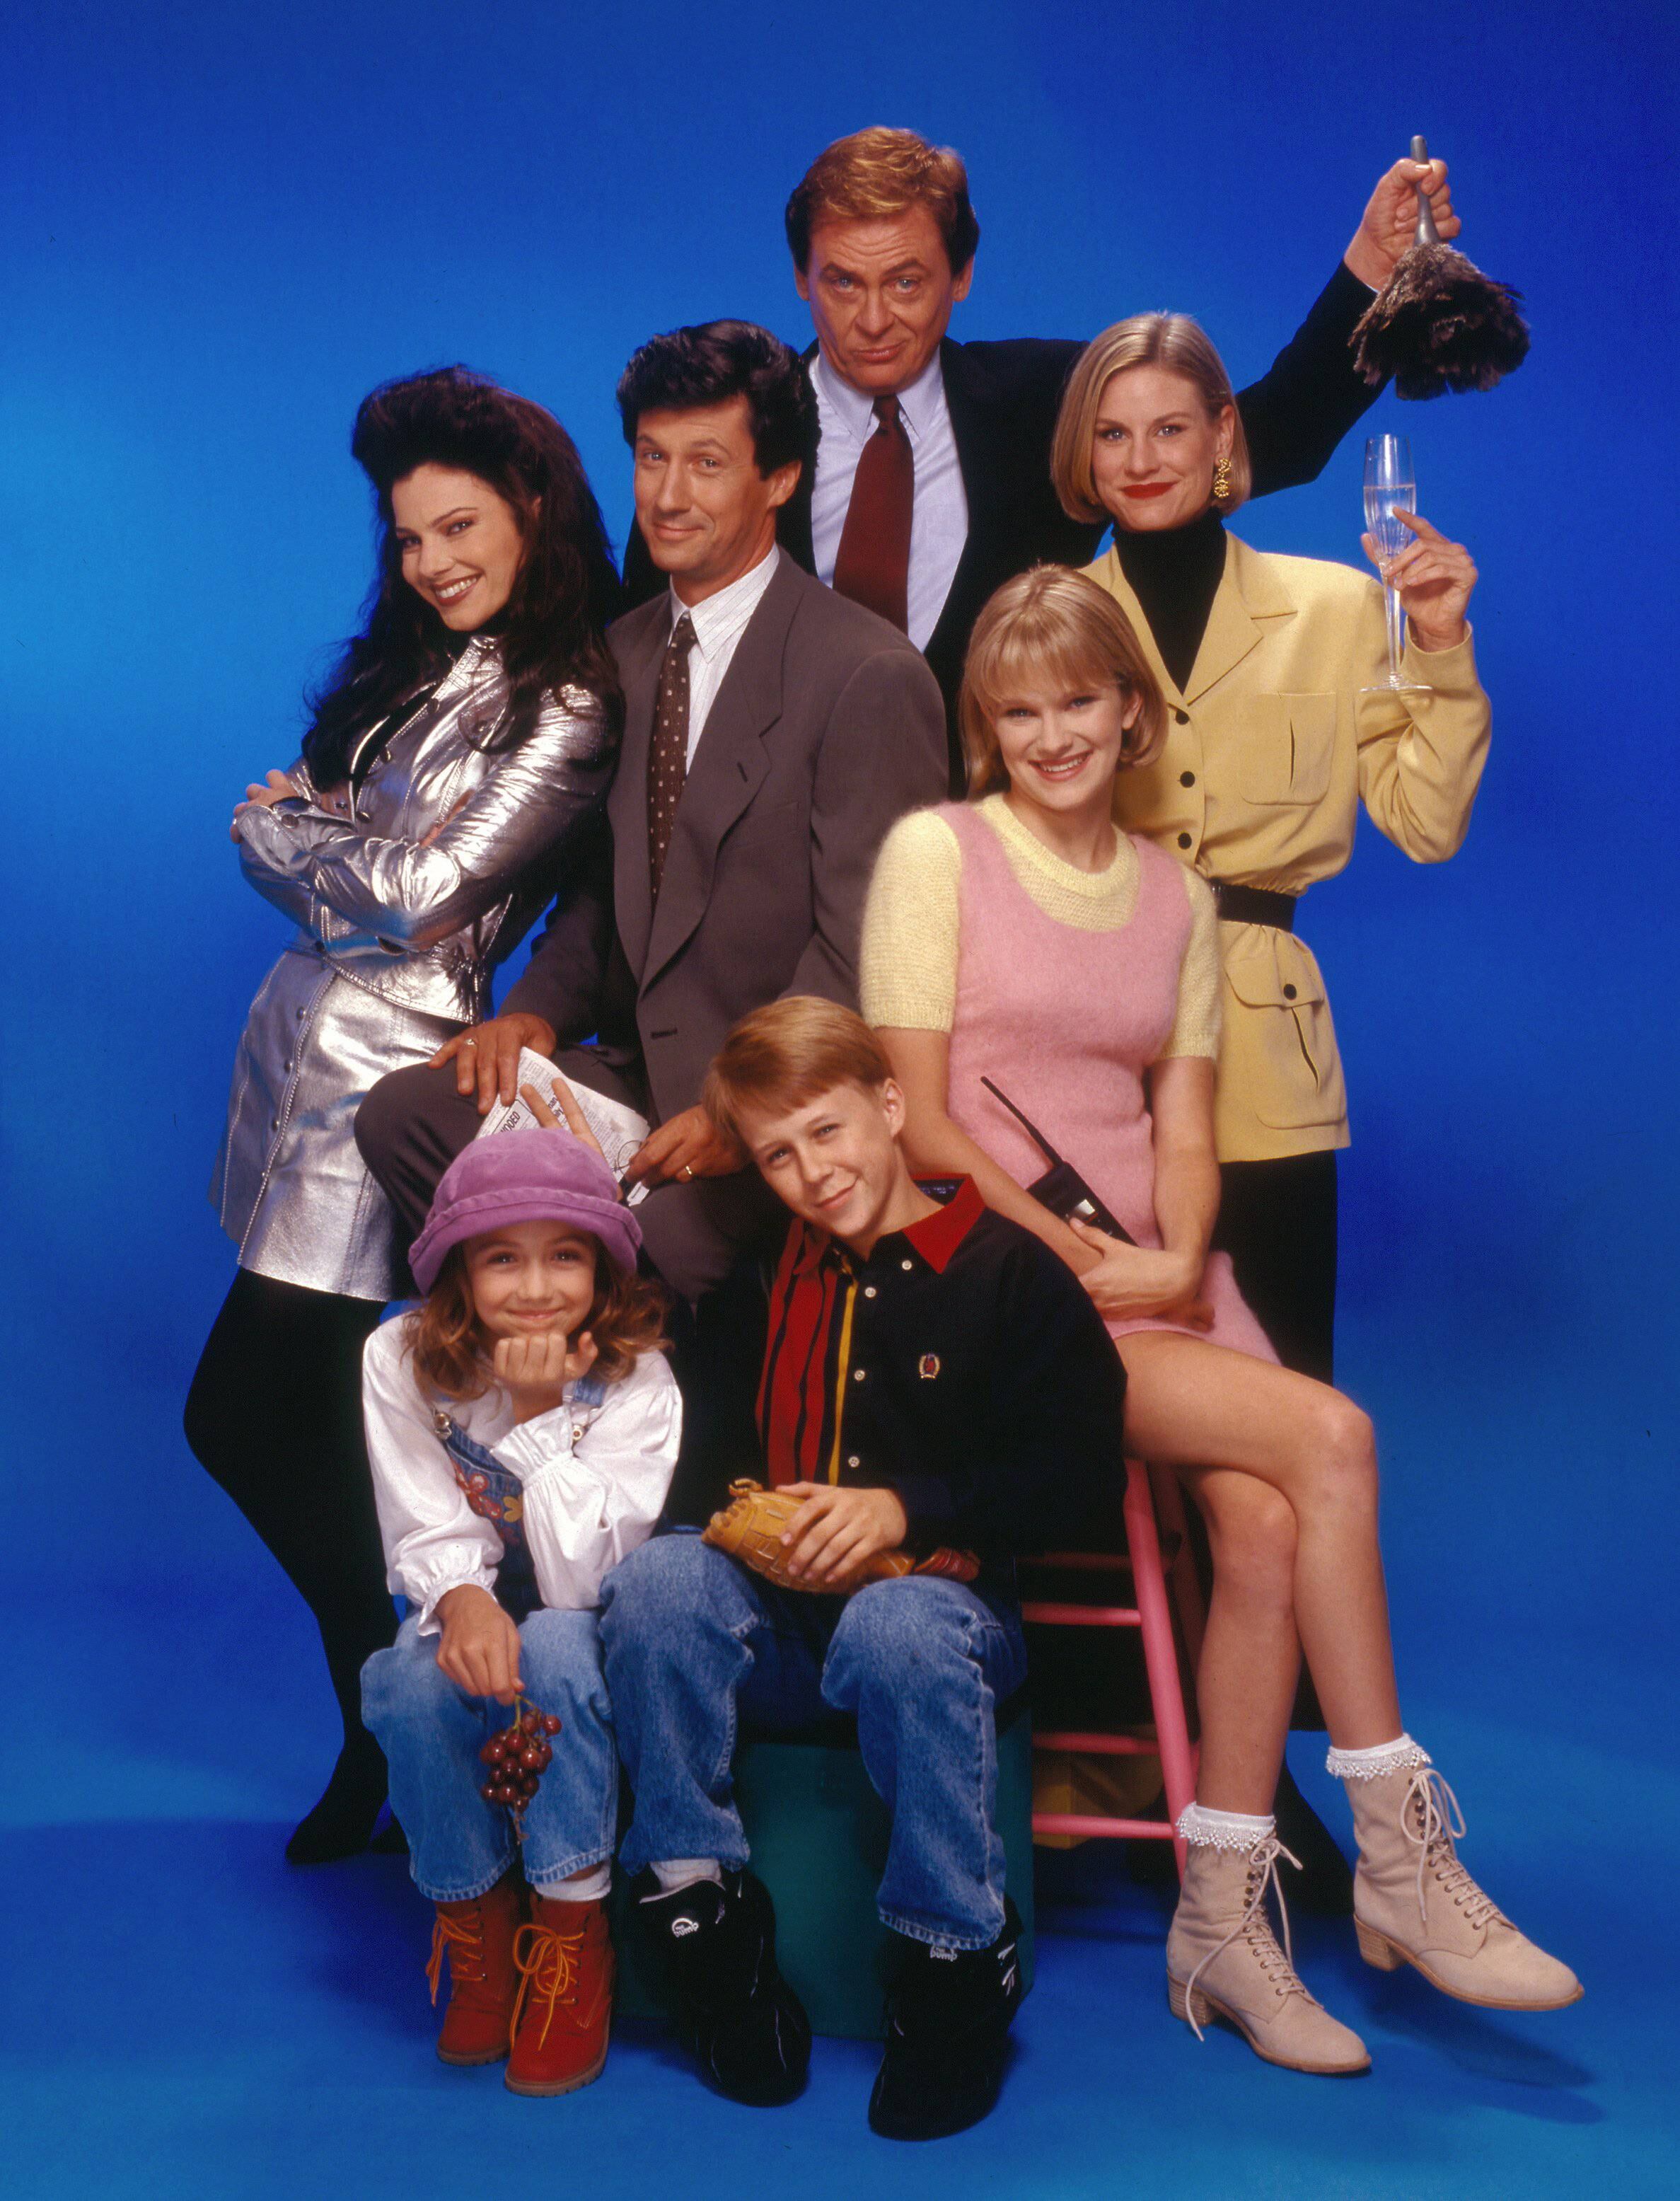 Imagen promocional de 1995 de la serie 'La niñera', protagonizada por Fran Drescher (a la izquierda).